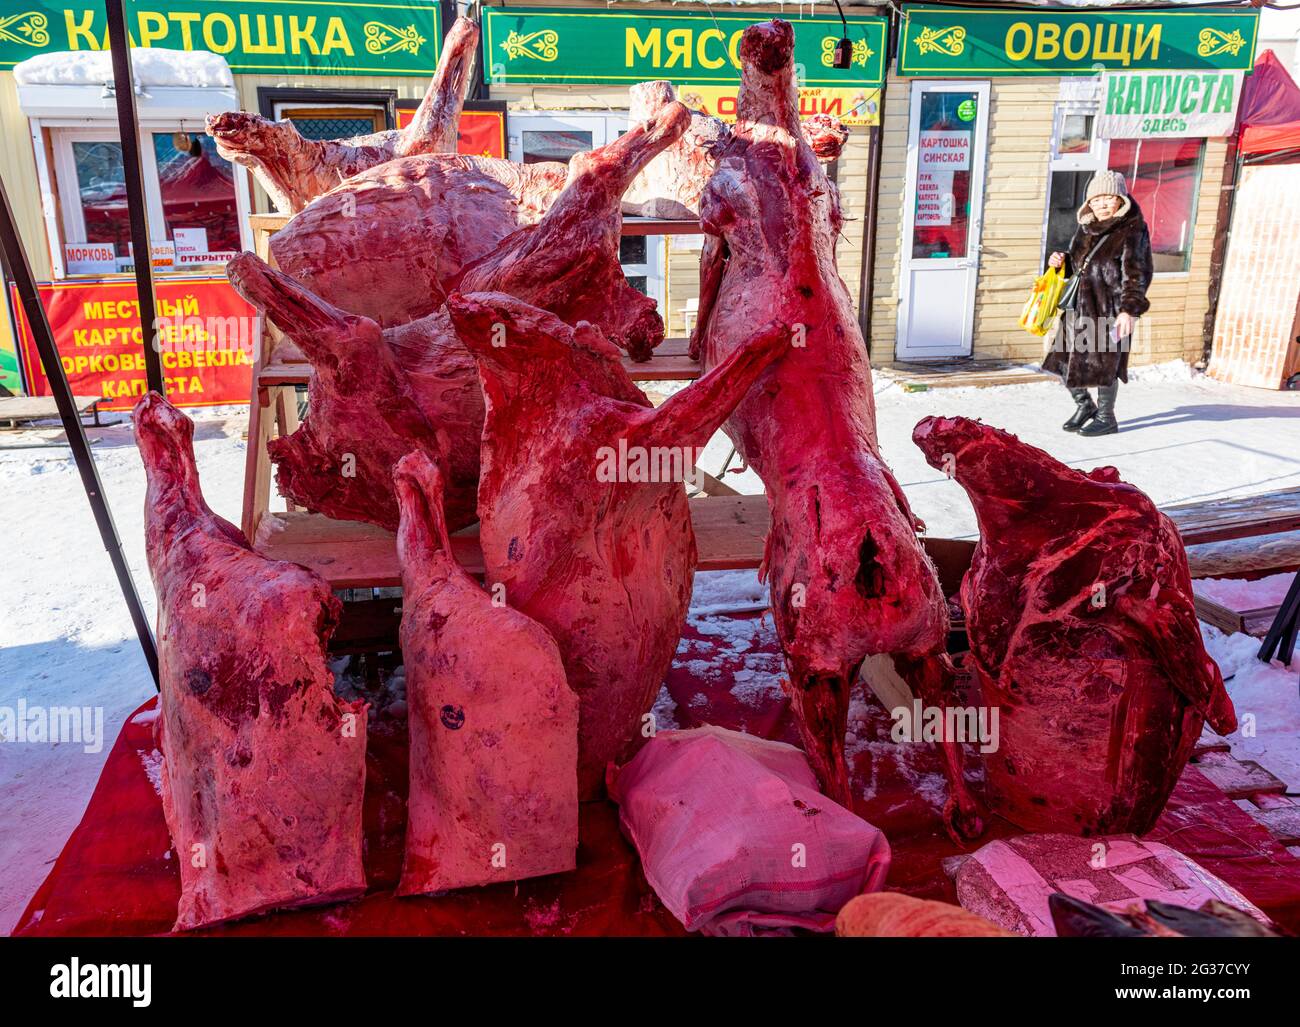 Viande surgelée, marché du poisson et de la viande, Yakoutsk, République Sakha, Russie Banque D'Images